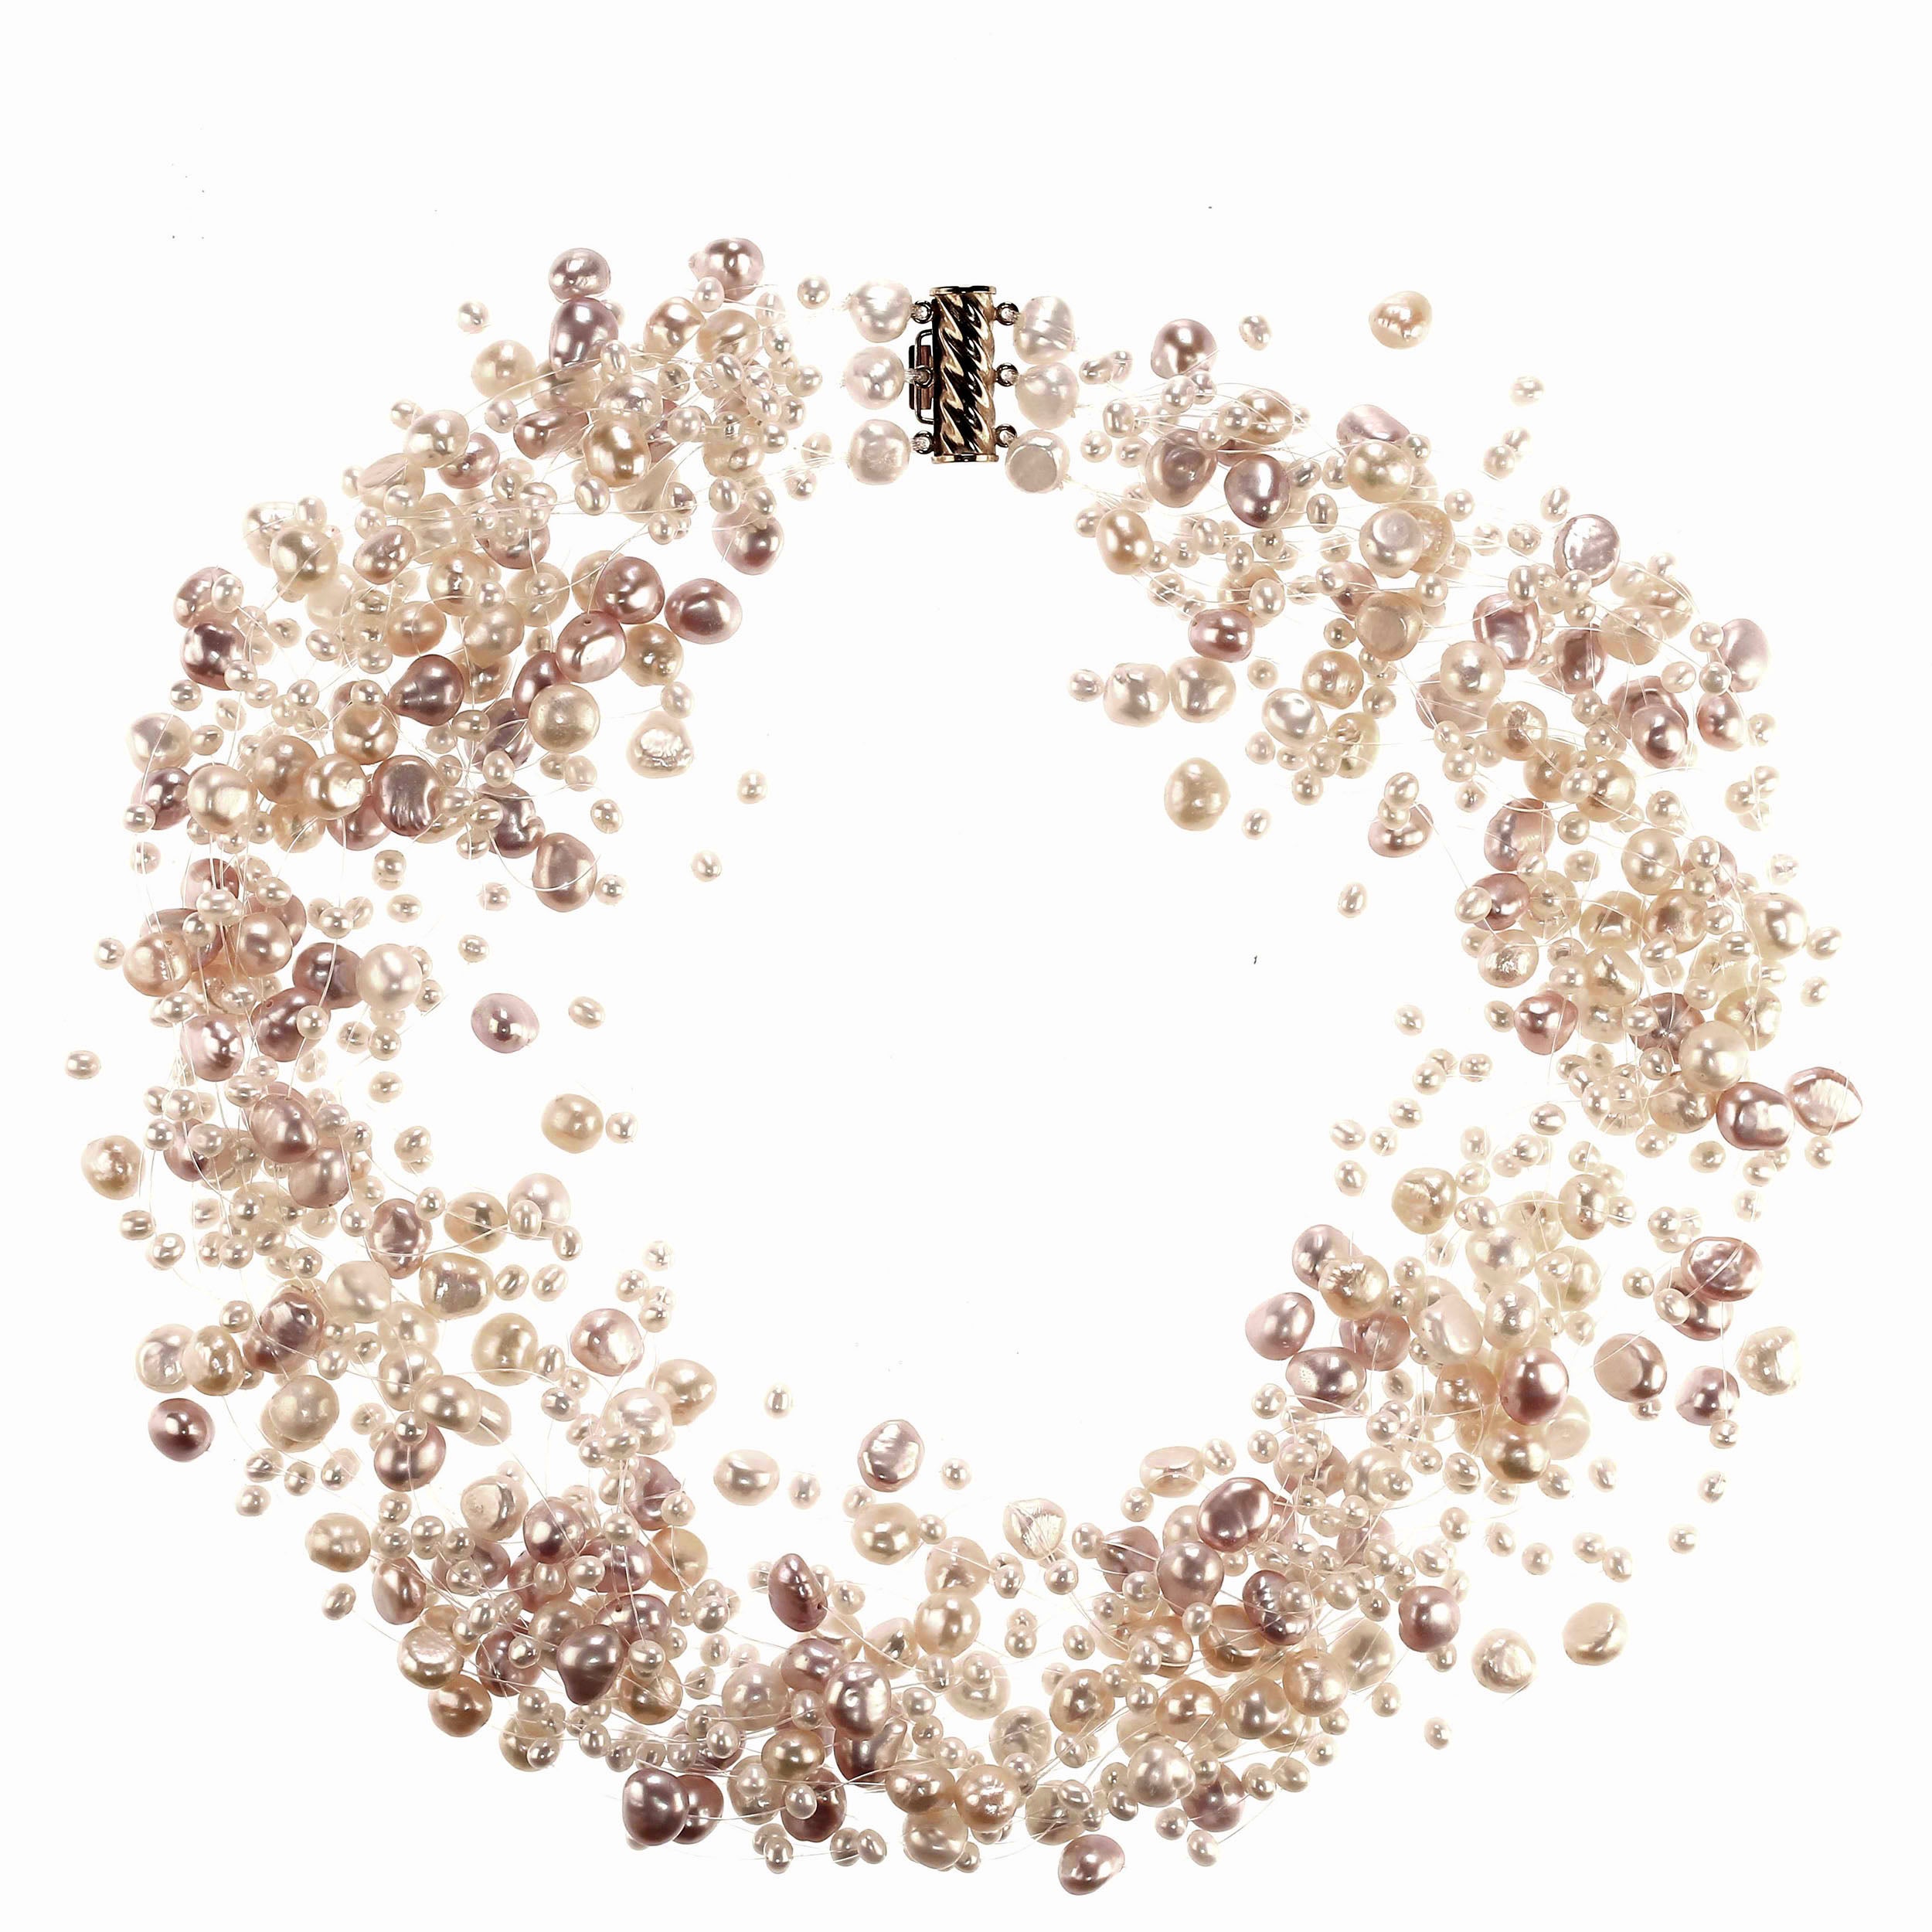 Voici le collier de perles flottantes multi-brins parfait et élégant.  Les perles sont de couleurs et de tailles différentes. Il y a environ 24 brins de filament qui rendent ce collier à la fois délicat et plein. Avec ses 15 pouces, il est assez